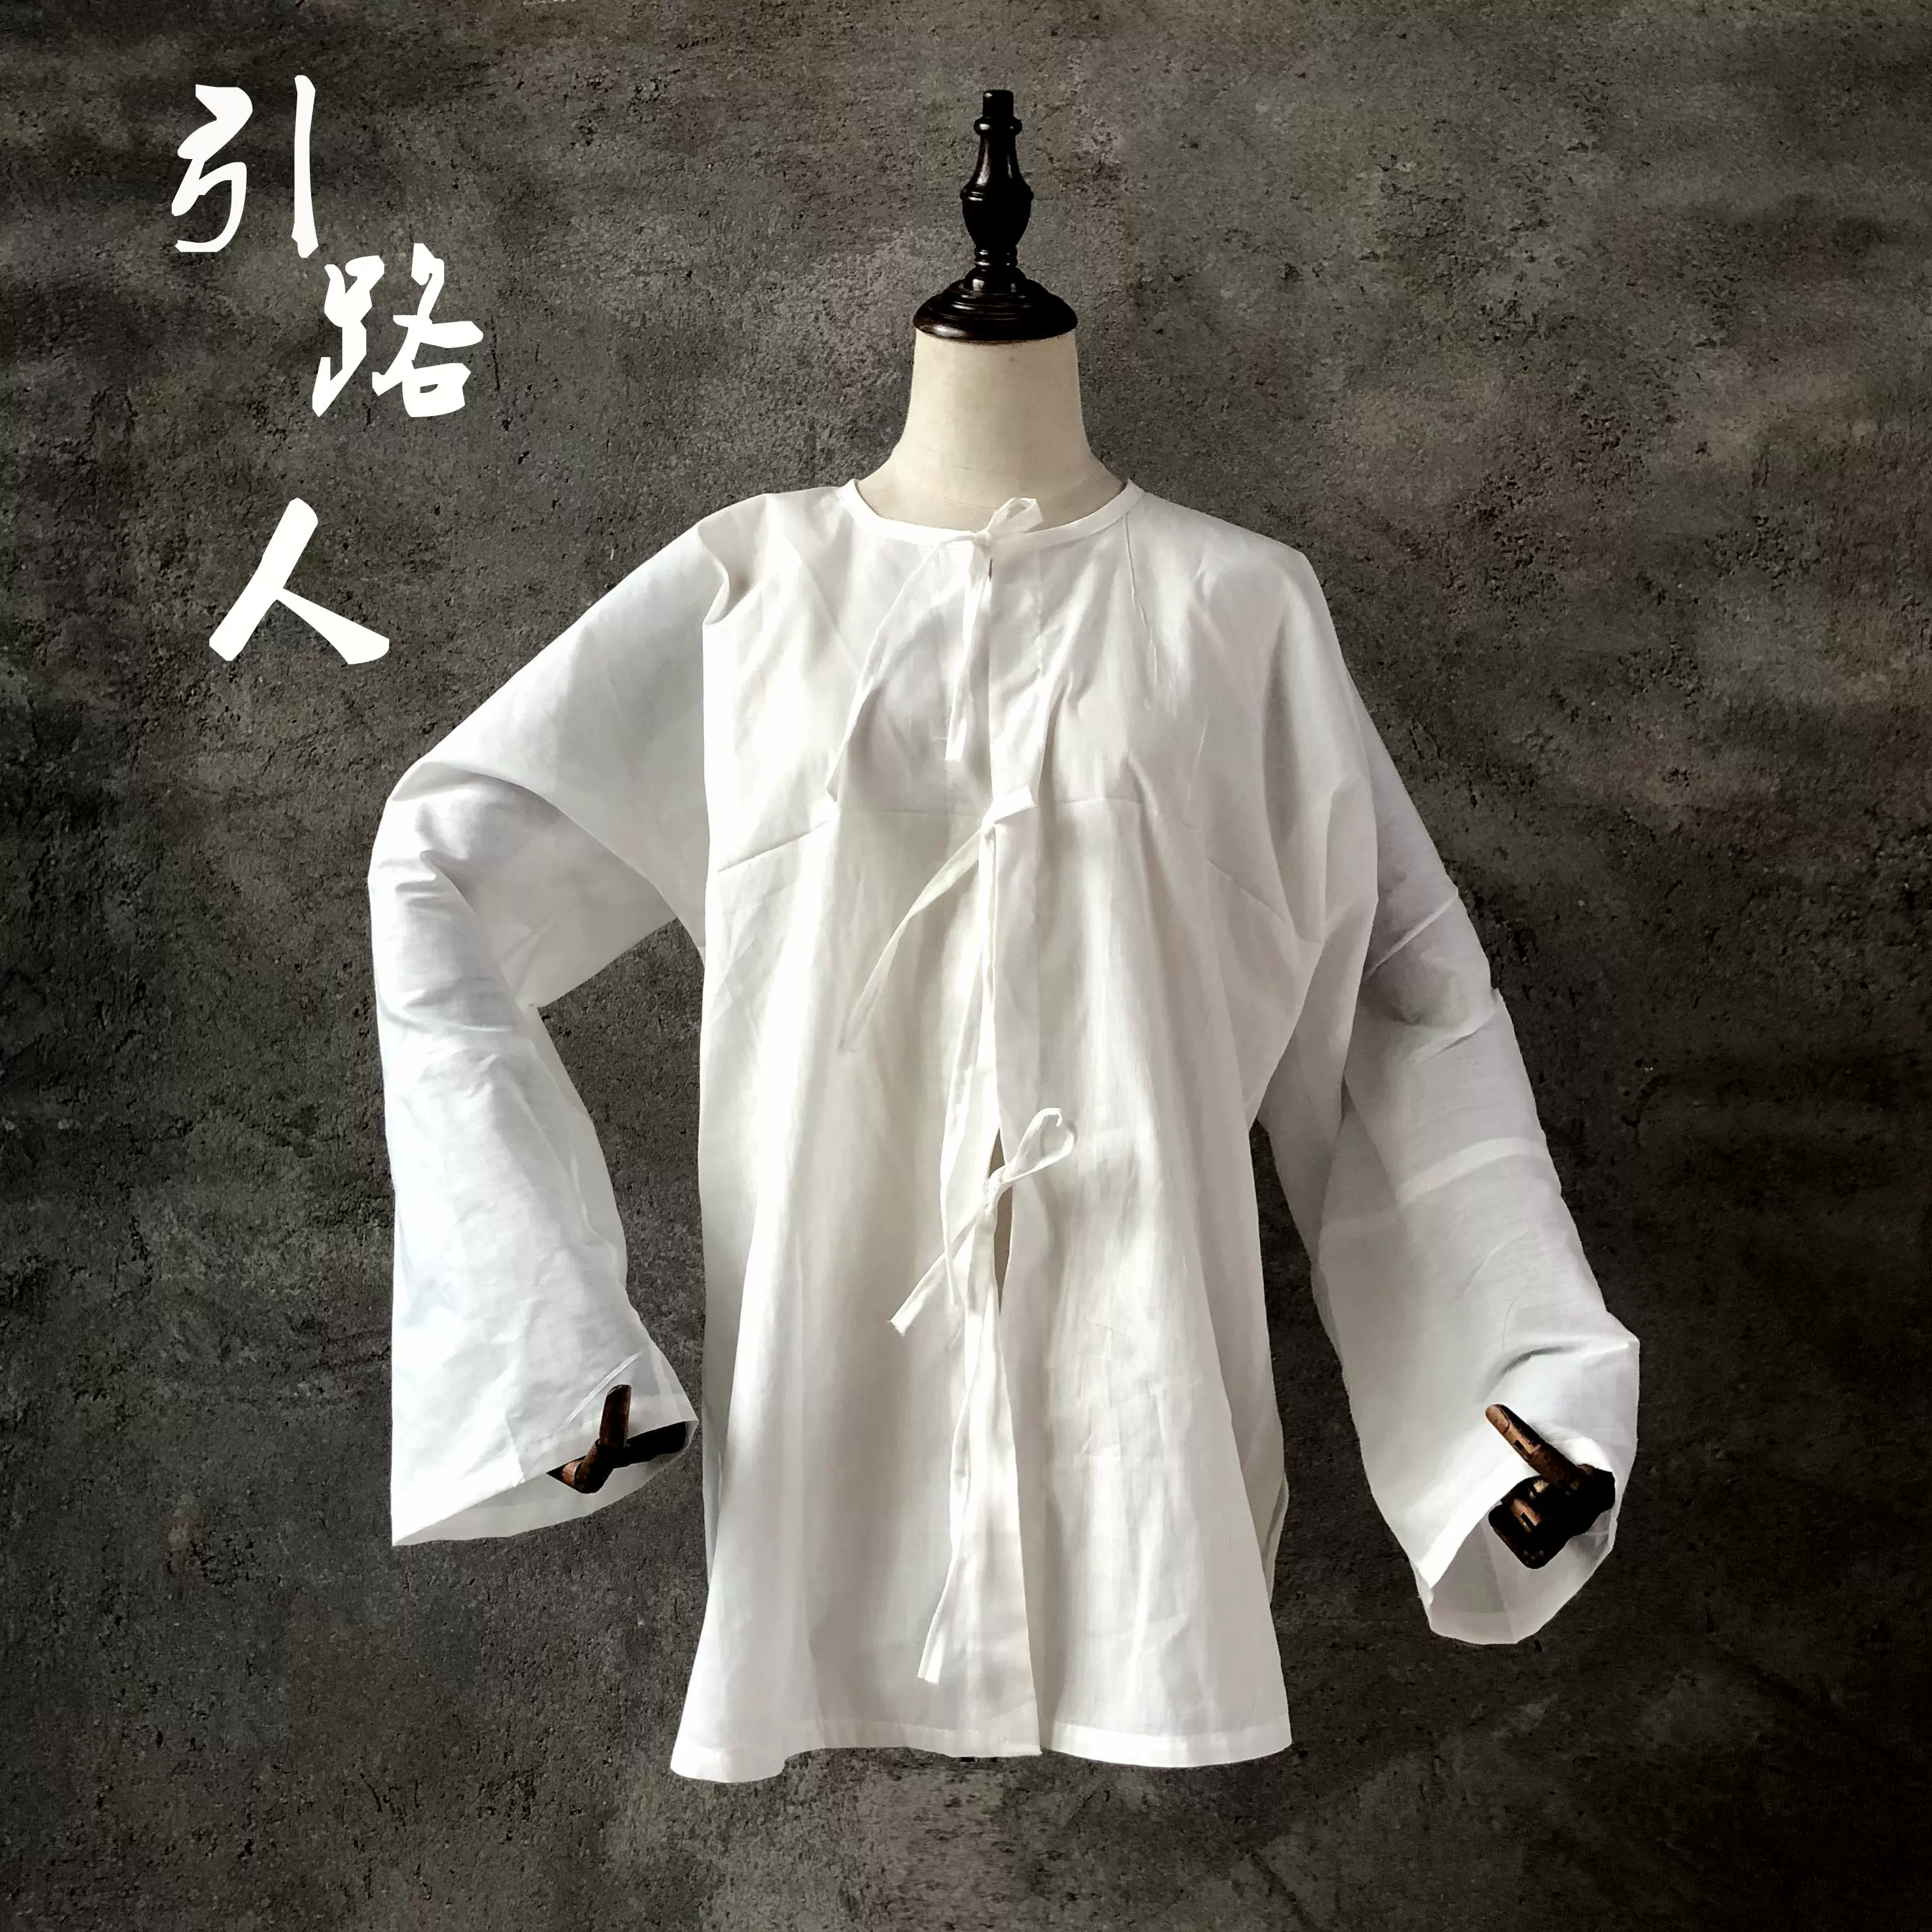 引路人纯白系带对襟上衣孝服男女孝衣葬礼衣服白事丧葬用品 Taobao